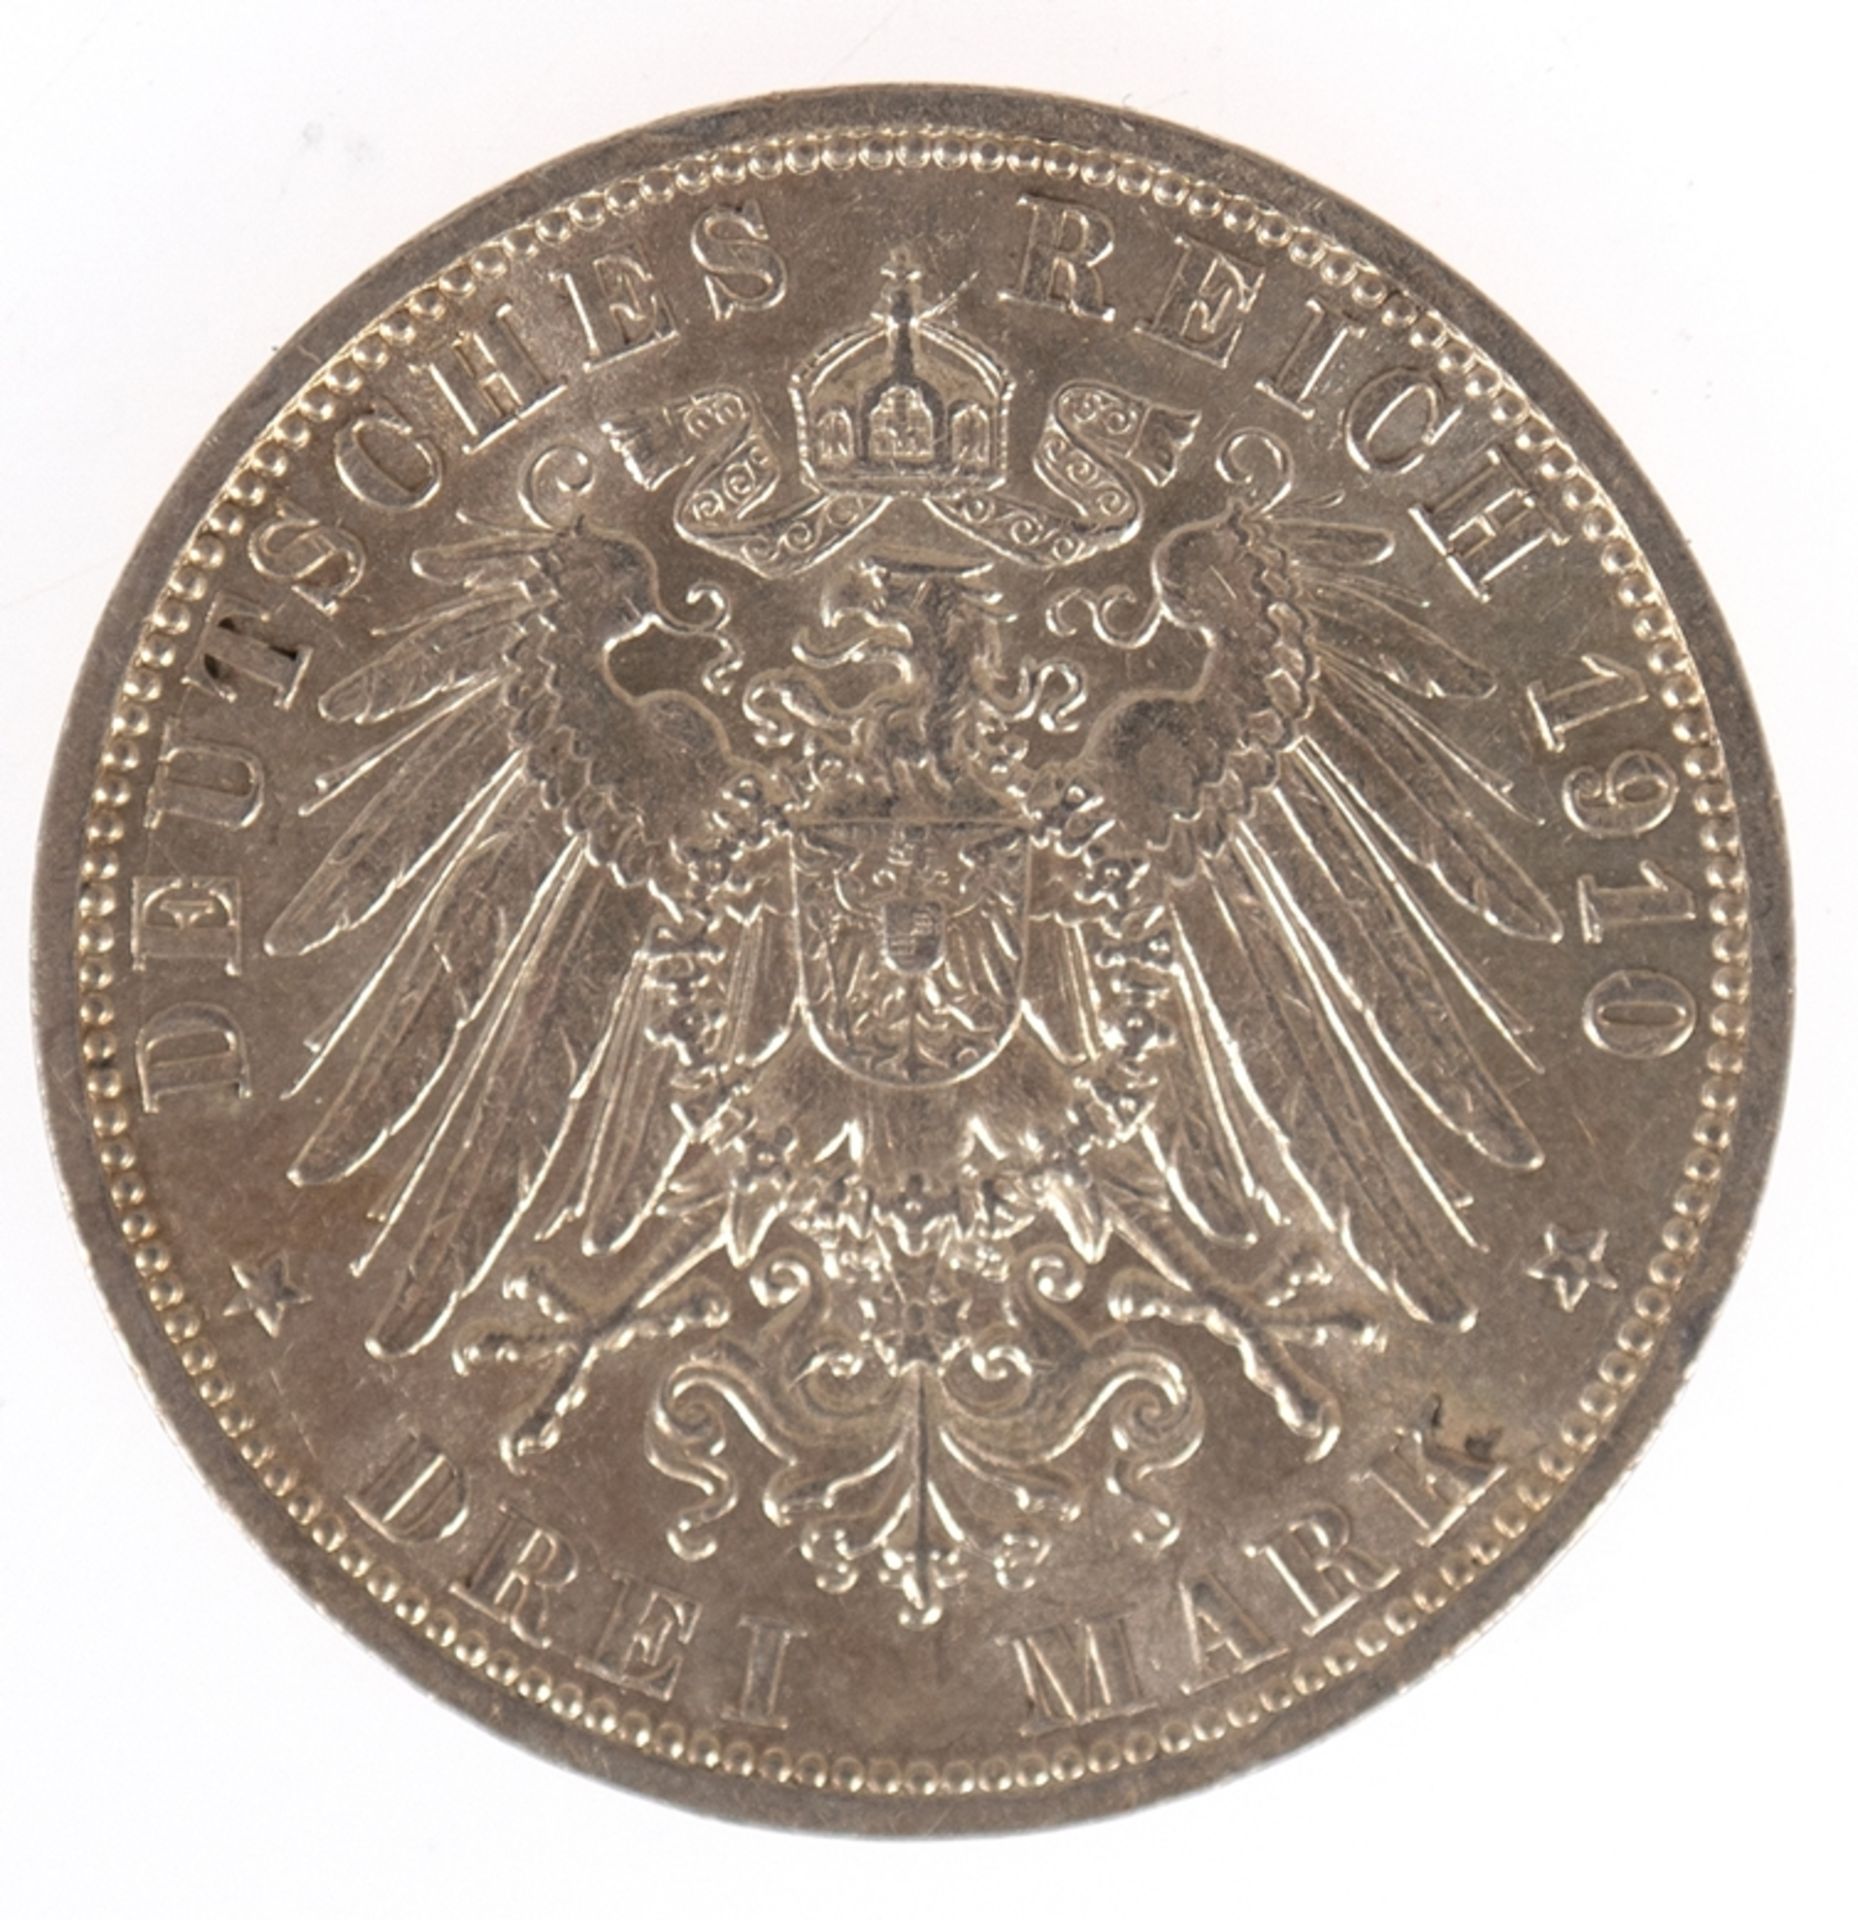 3 Mark, Preussen 1910 A, König und Kaiser von Preussen, 900er Silber - Image 2 of 2